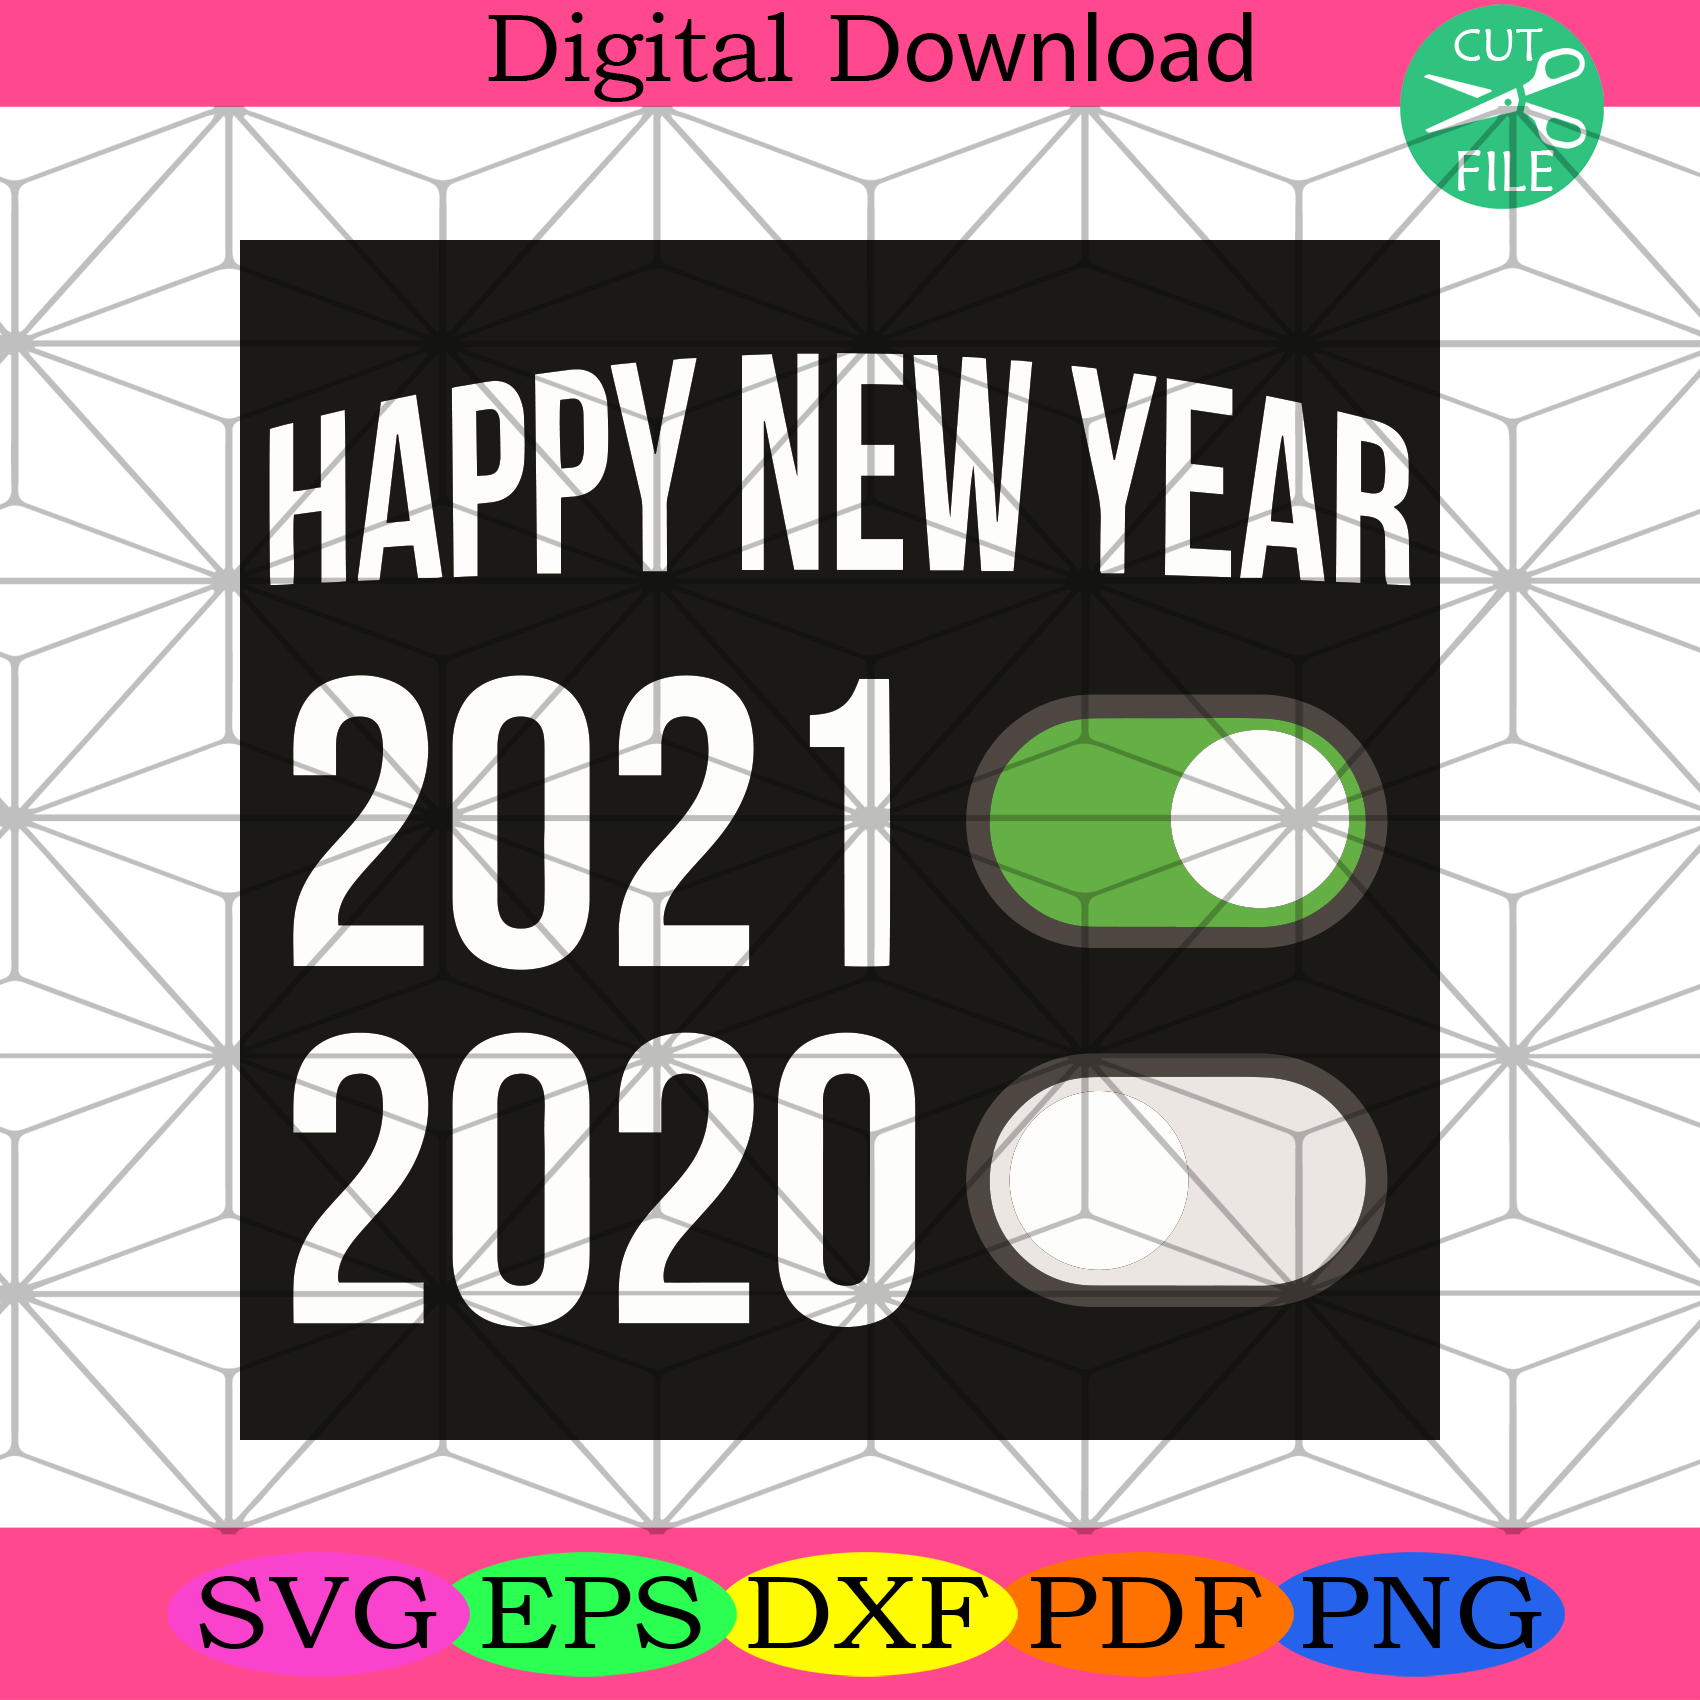 Happy New Year 2021 2020 Svg Happy New Year Svg, New Year 2021 Svg